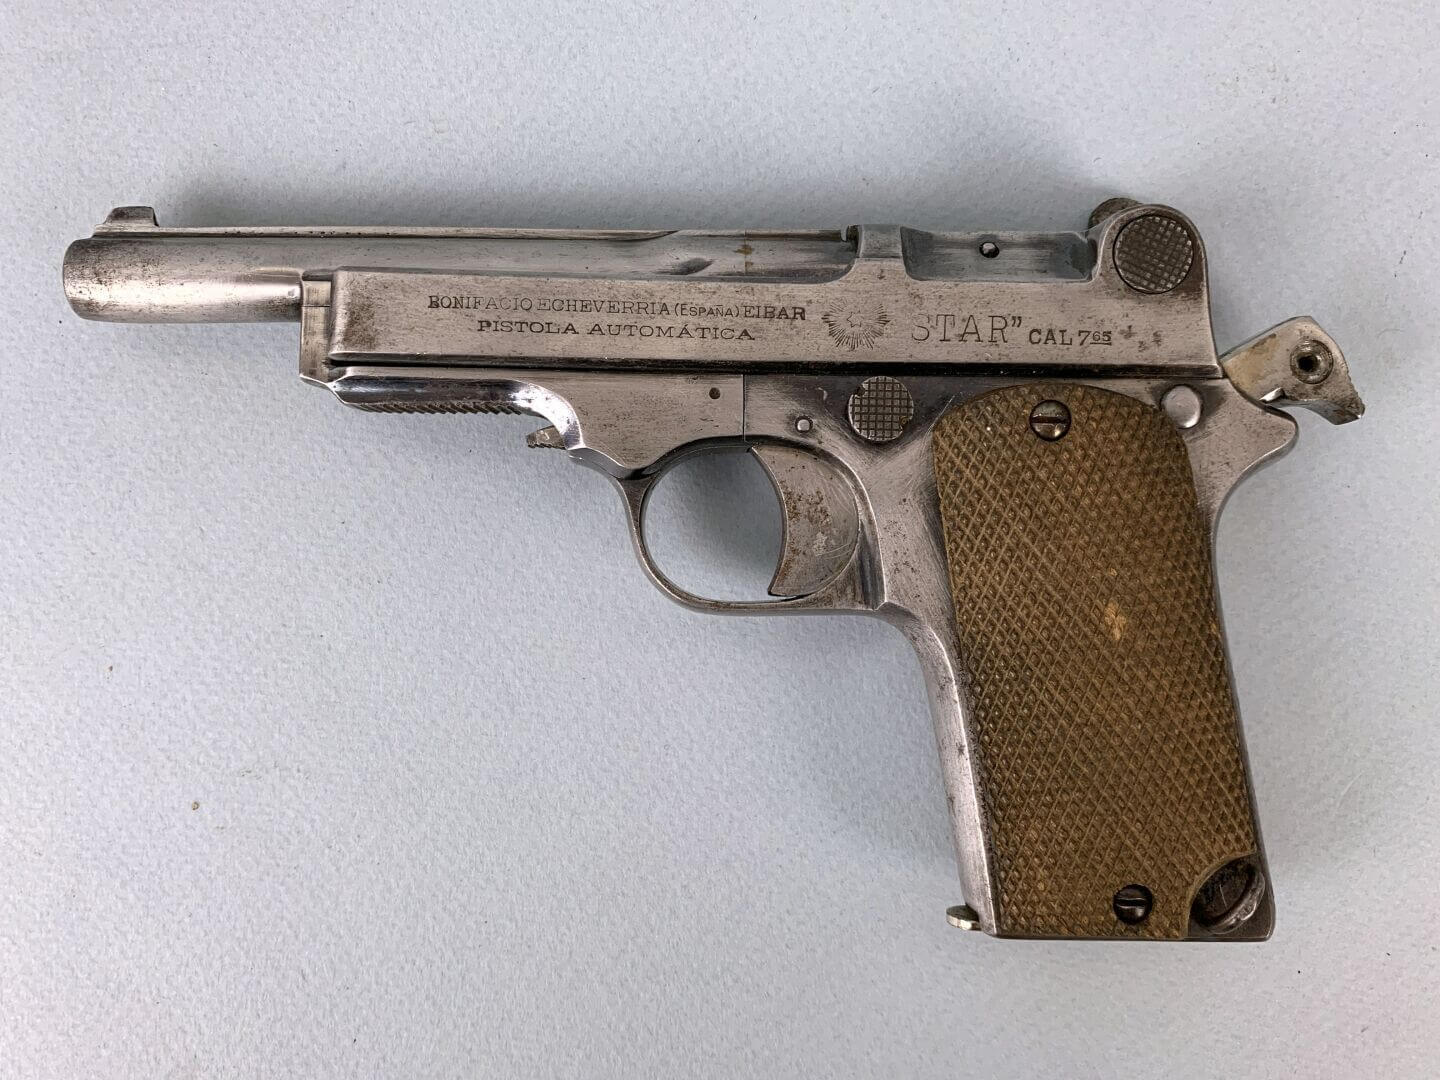 Pistolet automatique Star, fabriqué par Bonifacio Echeverria, calibre 7,65mm